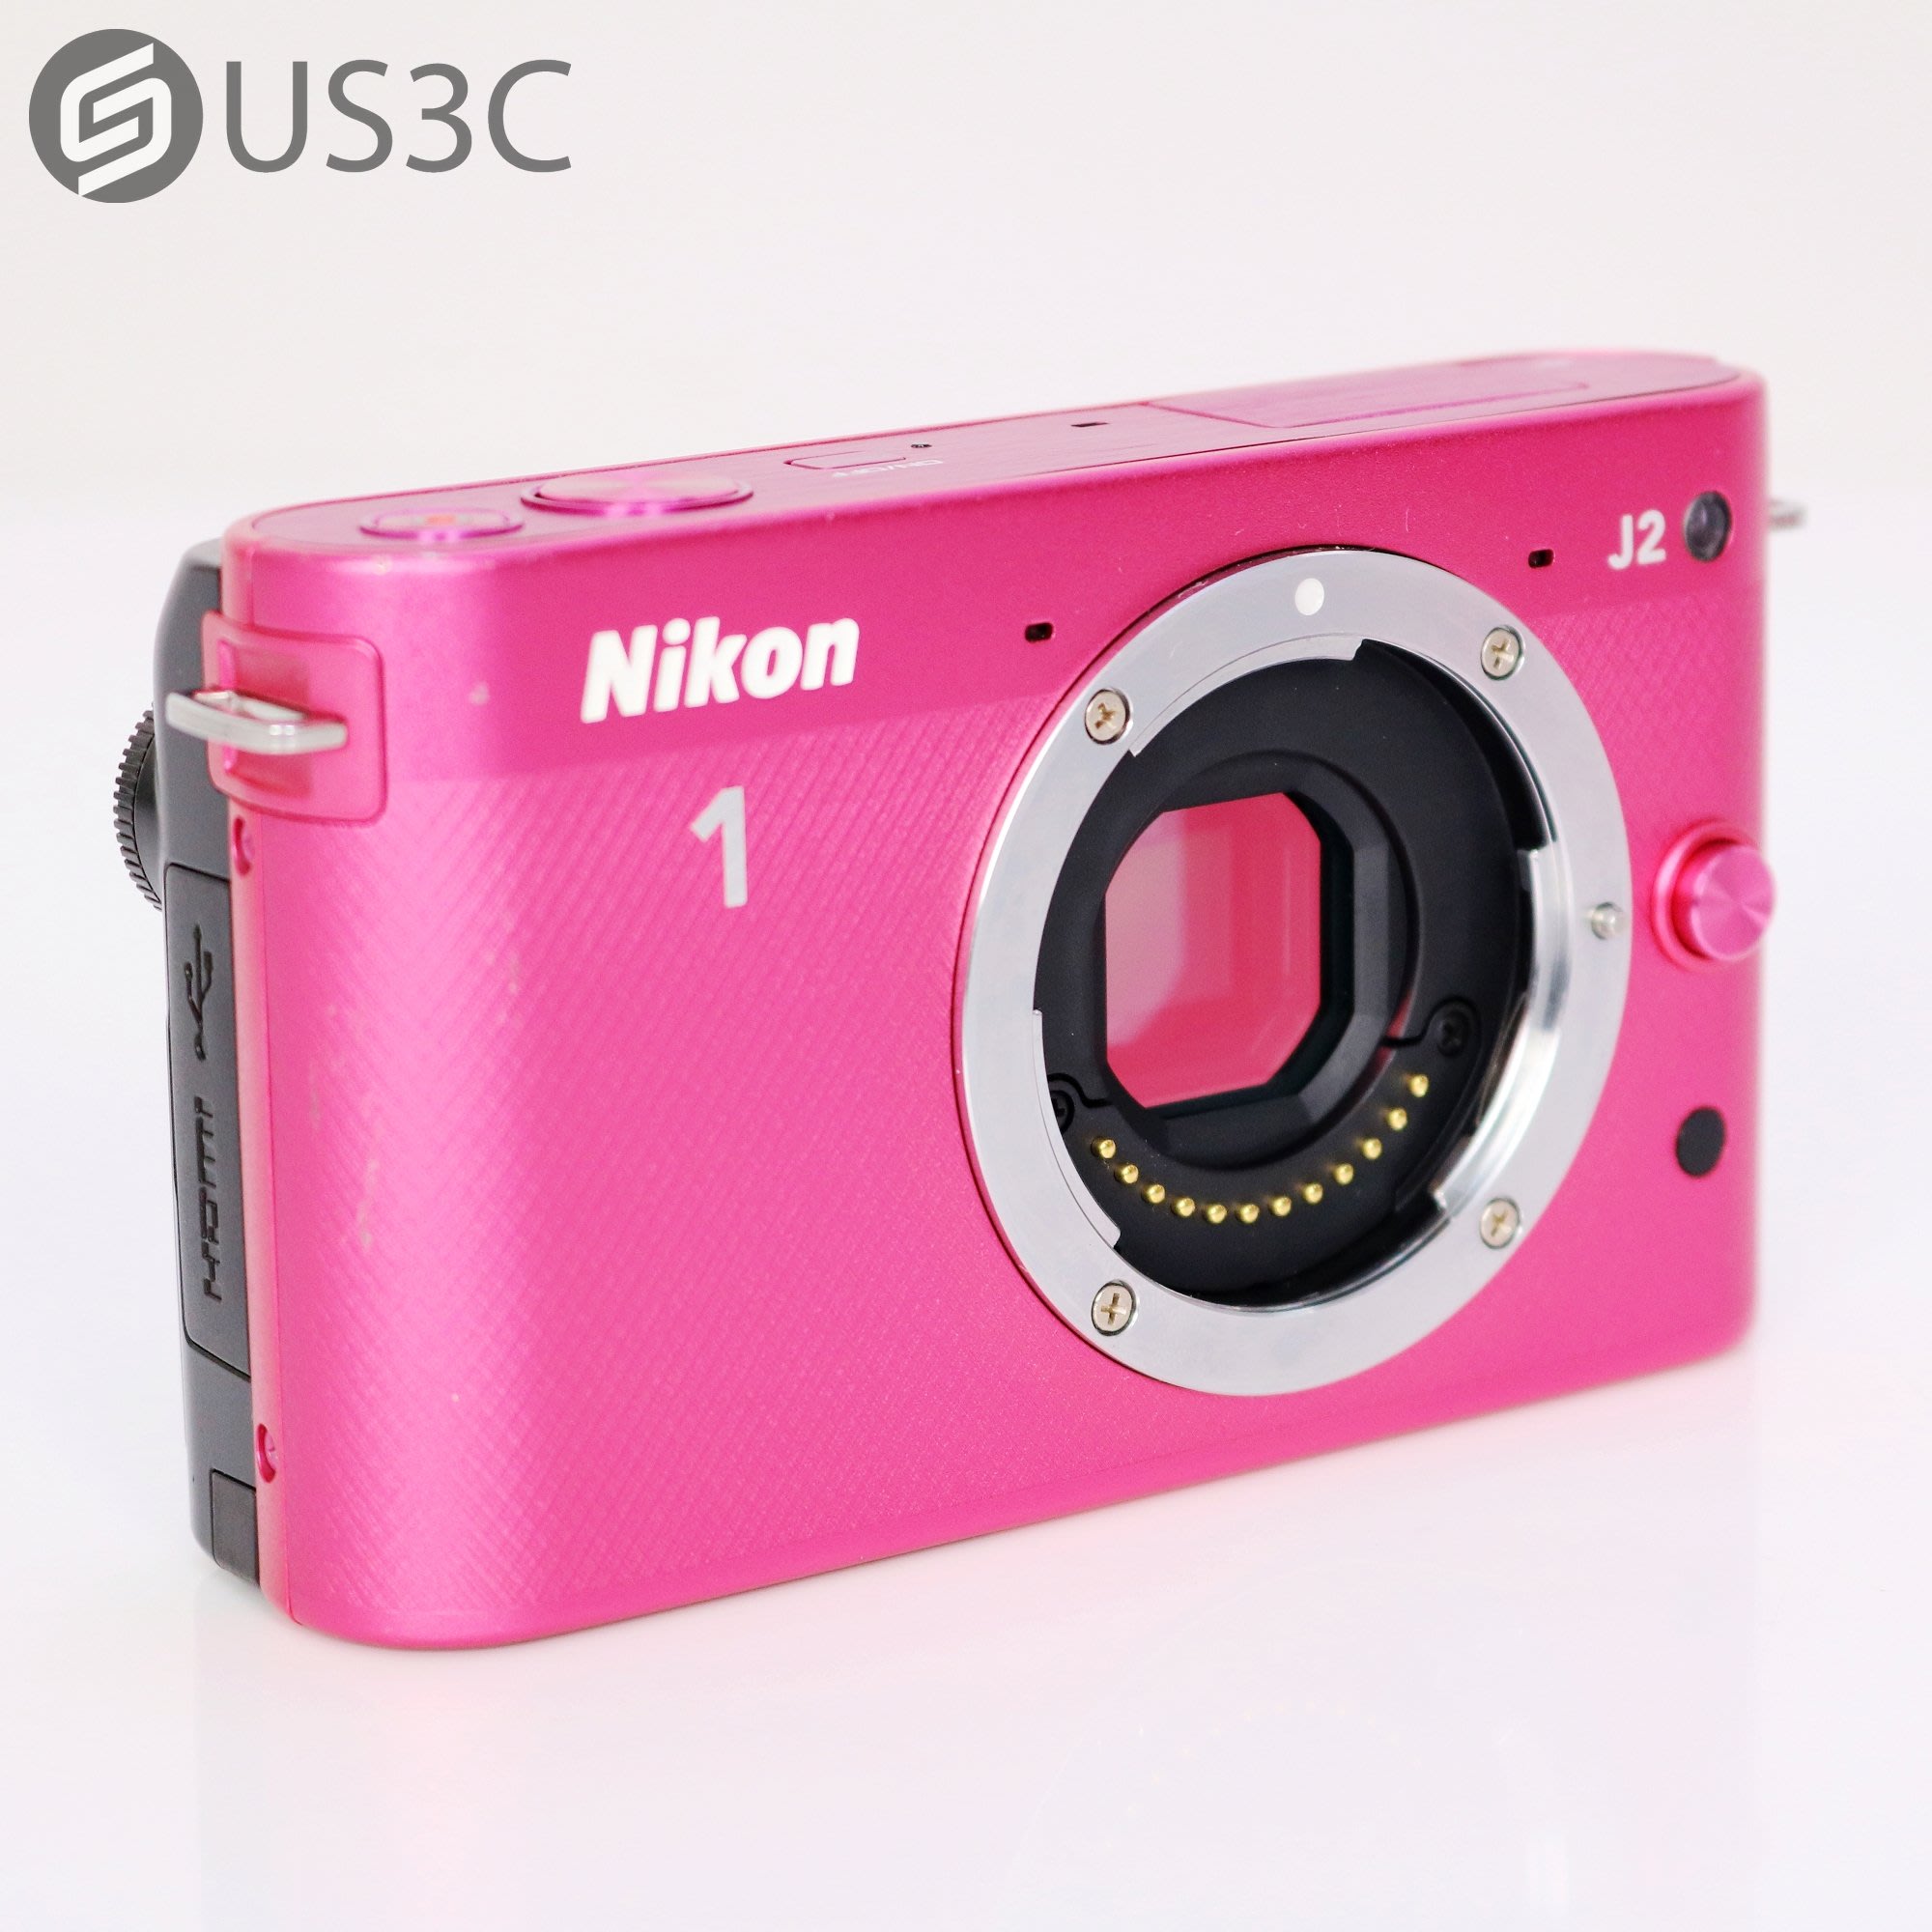 【US3C-高雄店】尼康 Nikon 1 J2 + Nikon 1 VR 10-30mm F3.5-5.6 1200萬像素 高速自動對焦 微單眼  二手相機